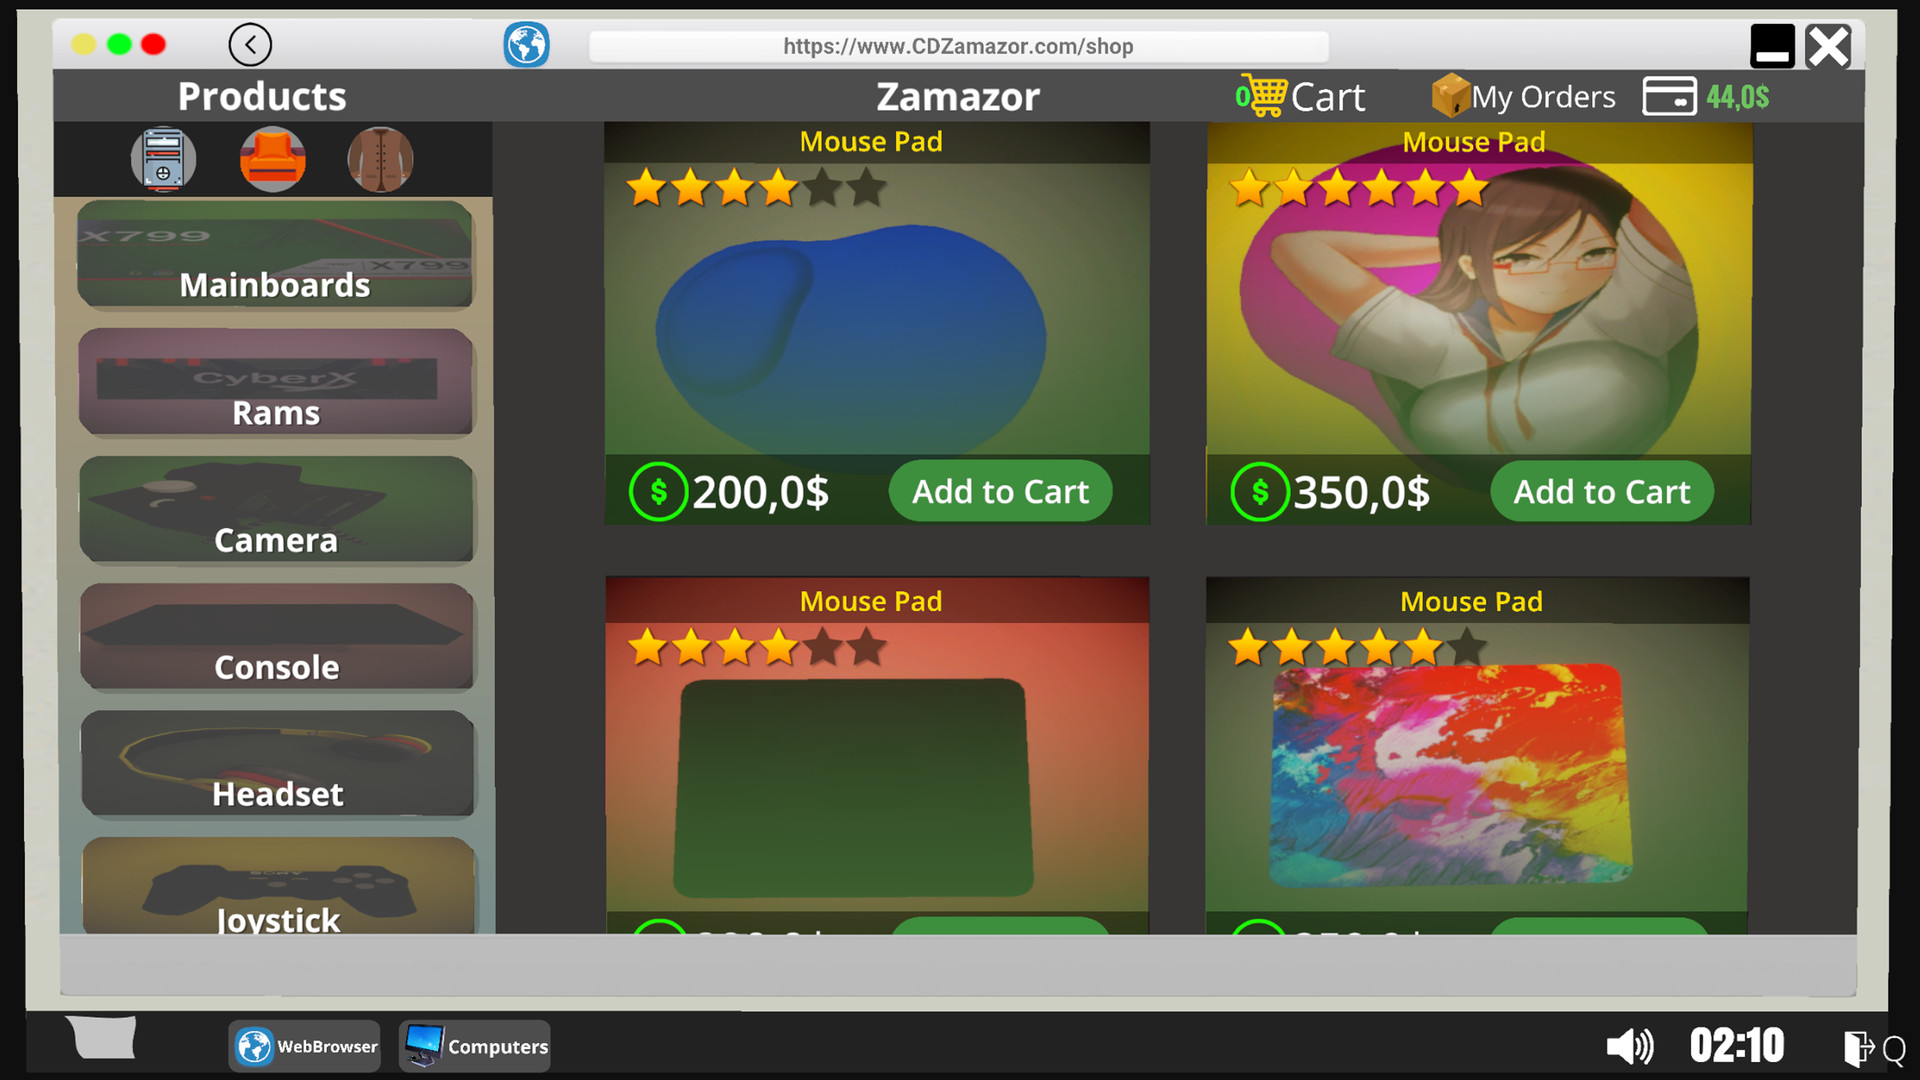 Tudo sobre Streamer Life Simulator: veja download e requisitos do jogo